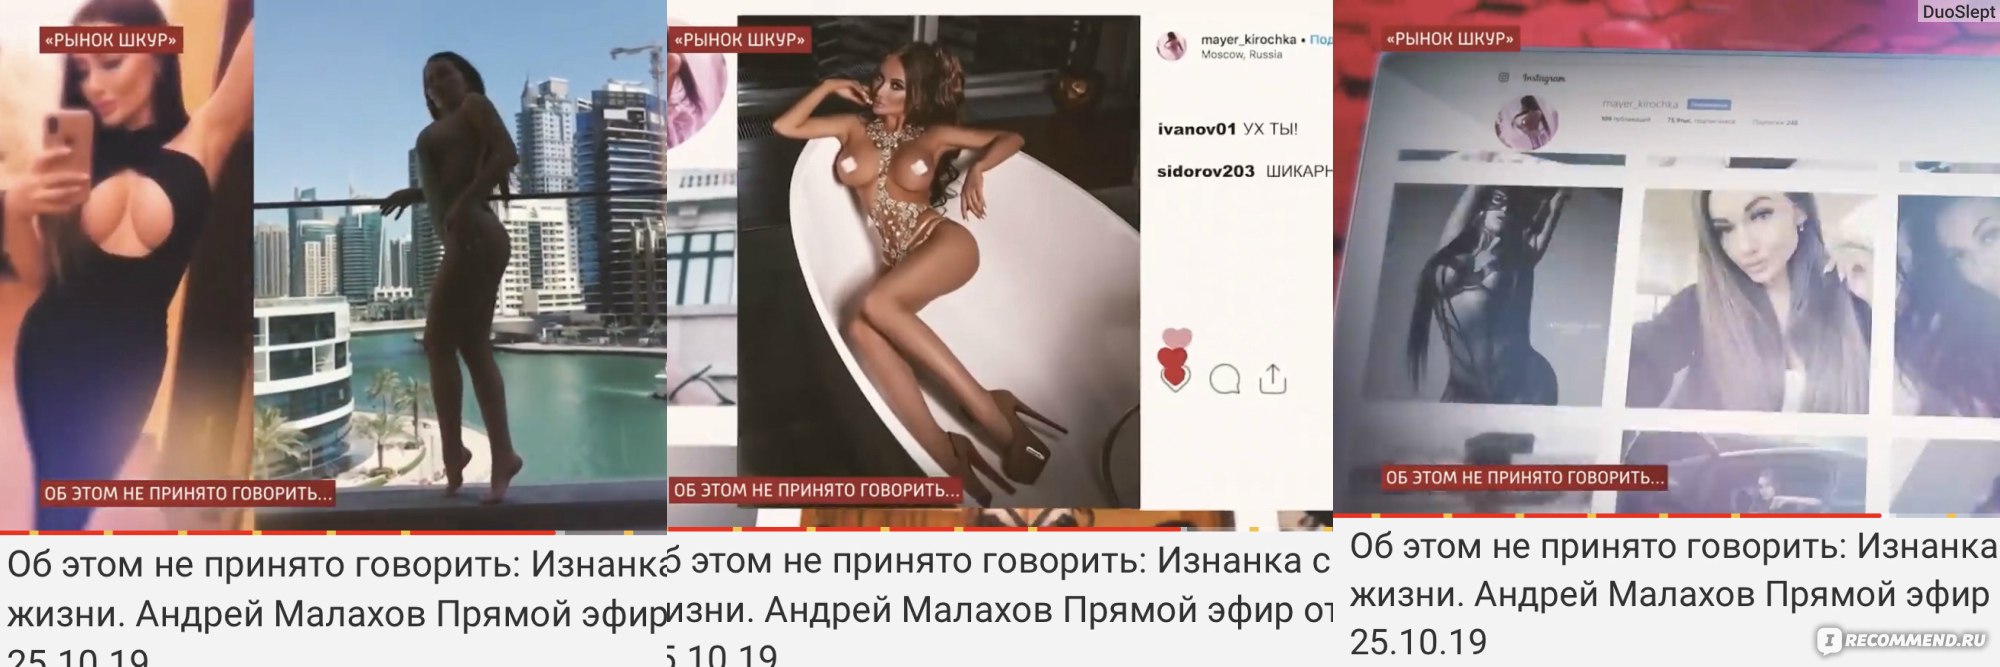 Проститутки Саратов Телеграм